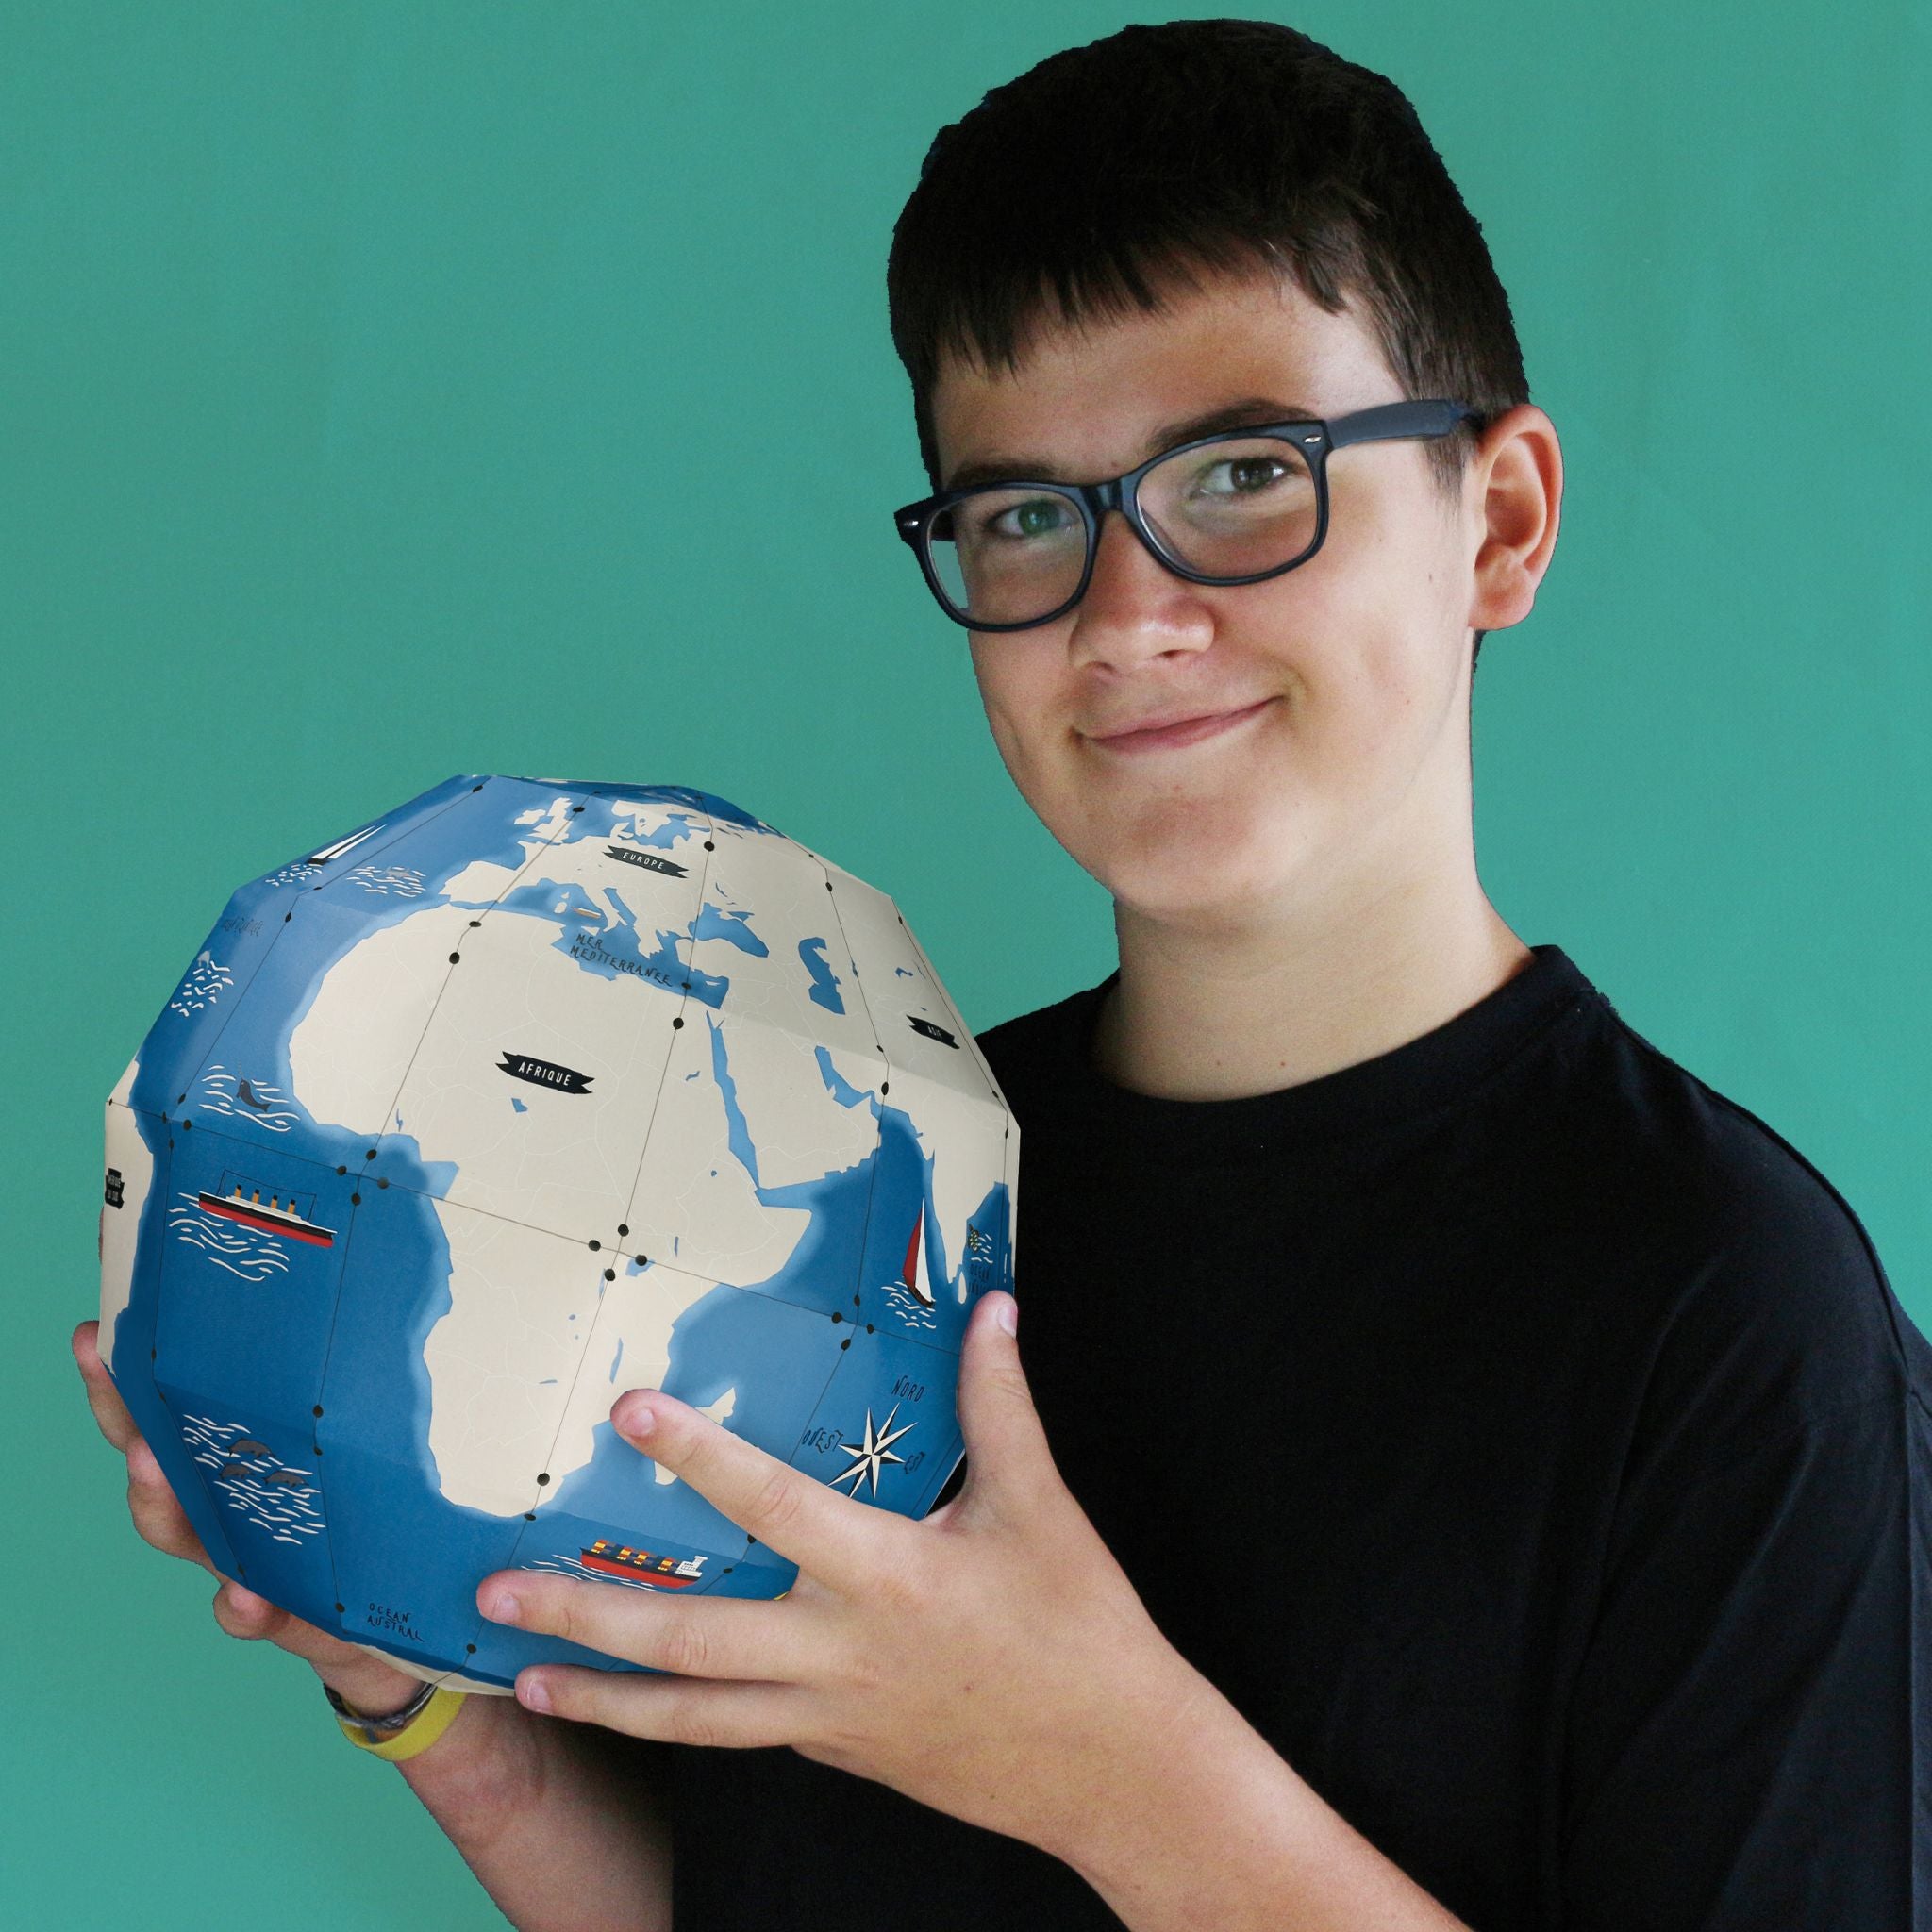  Globe terrestre pour enfants